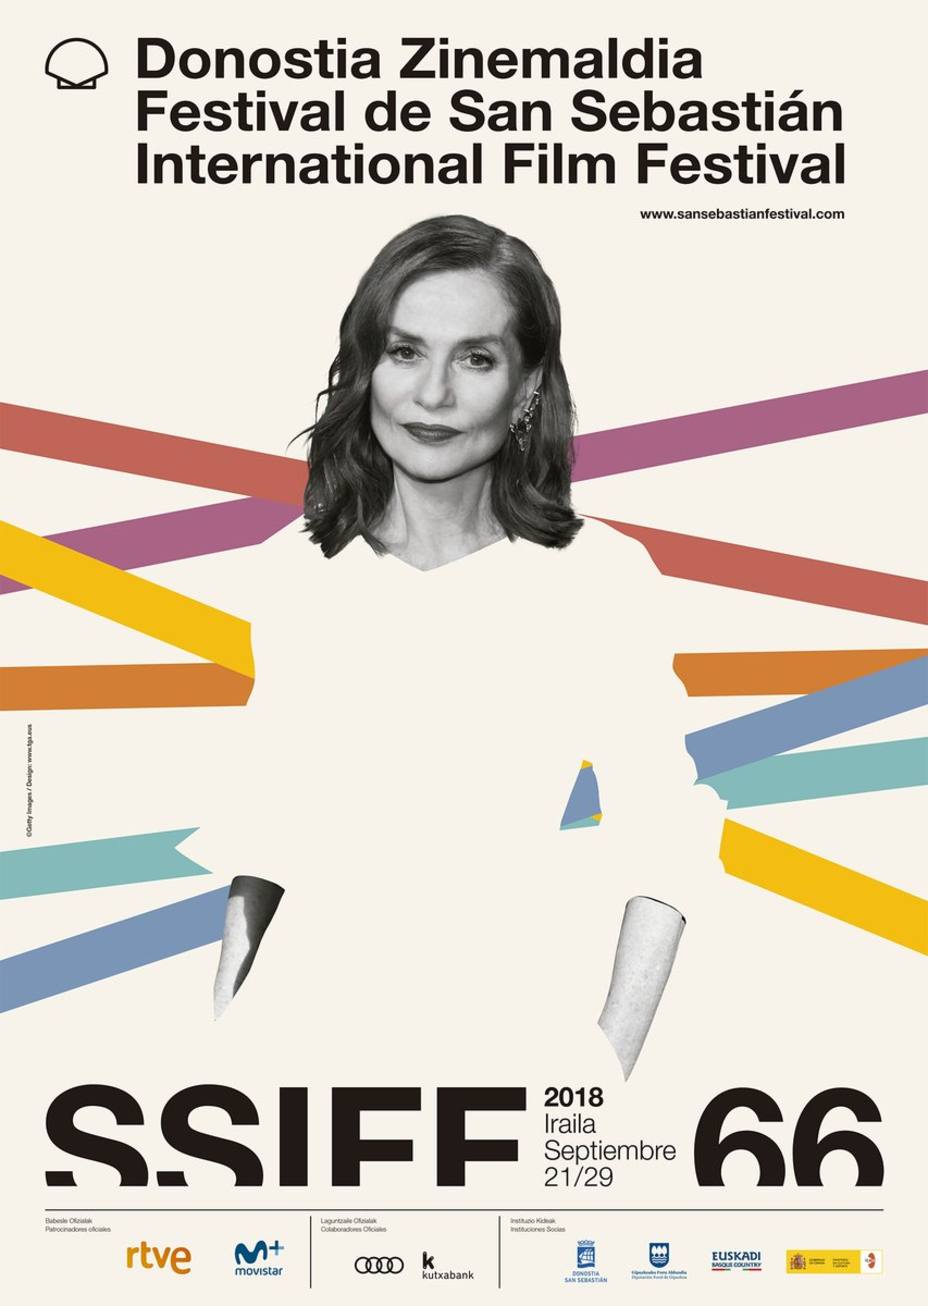 Isabelle Huppert protagoniza el cartel oficial del Festival de San Sebastián